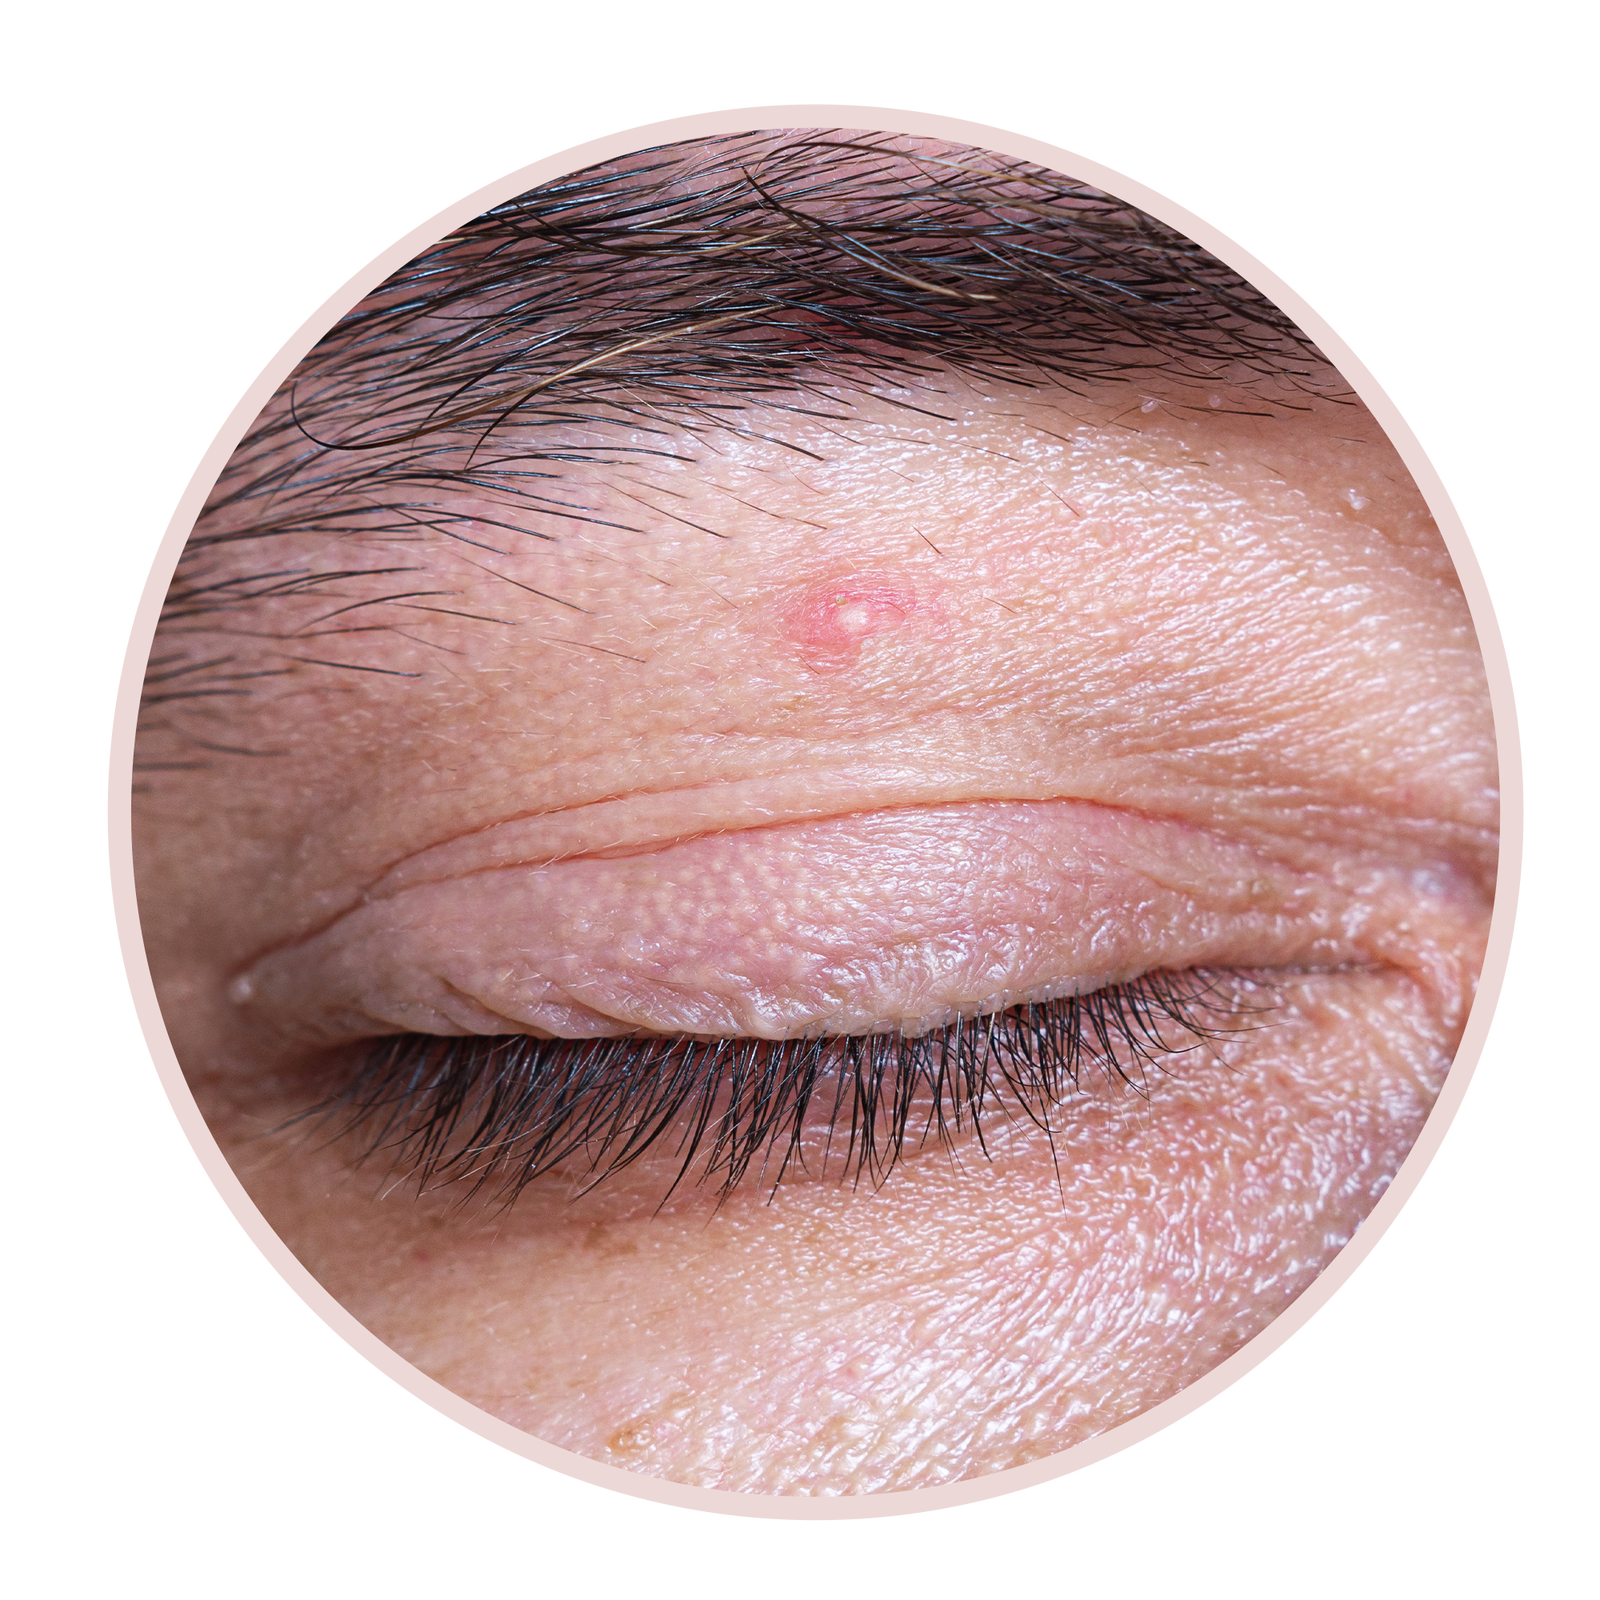 6 Arten von Augenlidbeulen und wie man sie laut Dermatologen behandelt